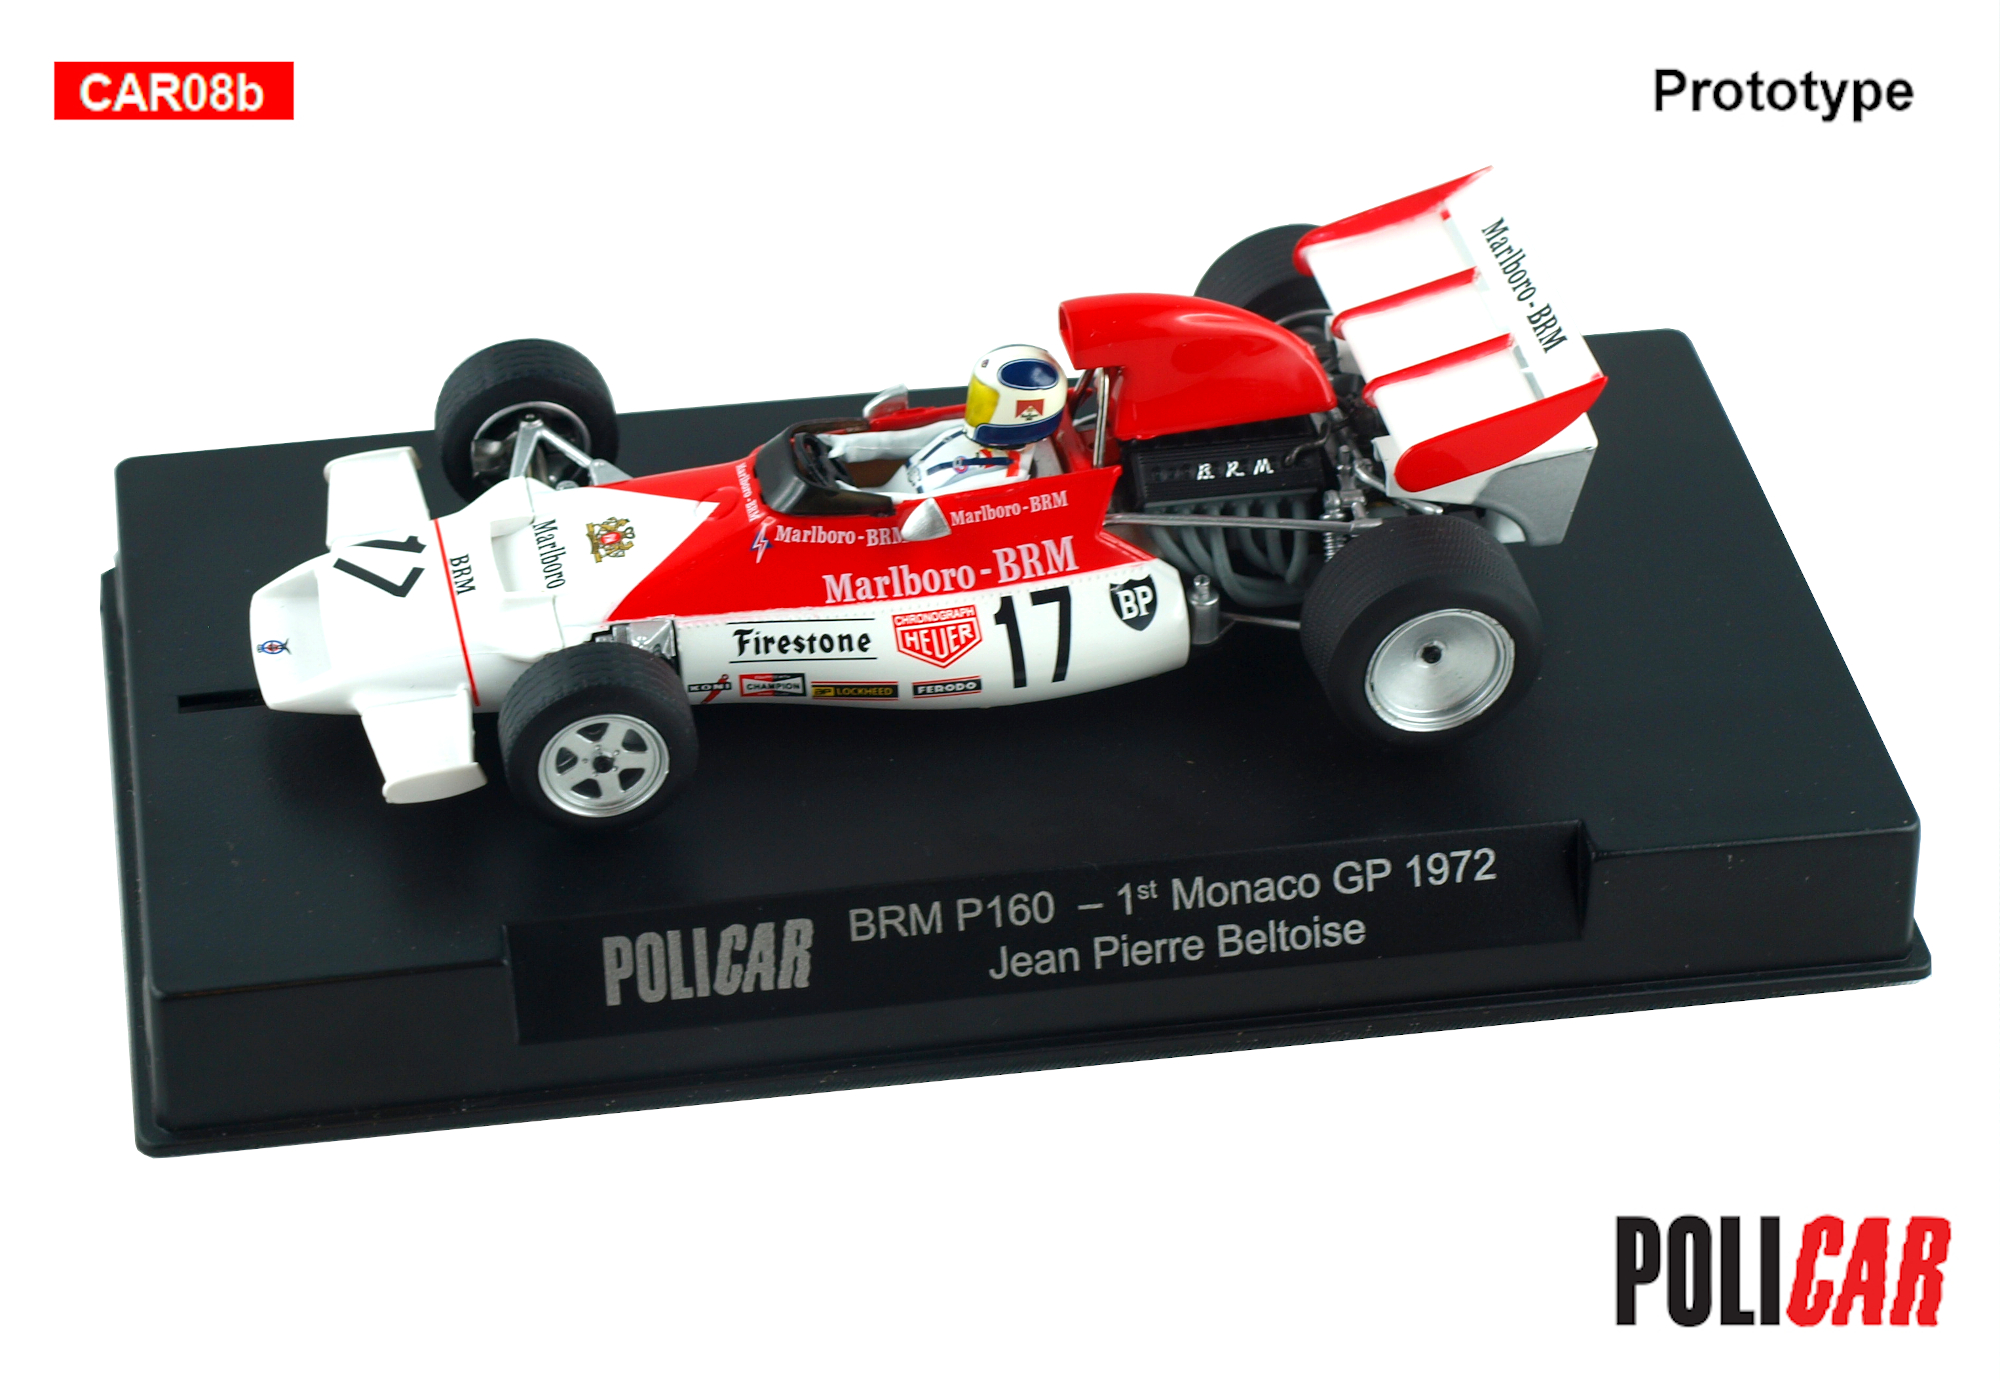 Policar - BRM P160, Nr.17, GP Monaco 1972  (PREORDER) -  Q2-2023